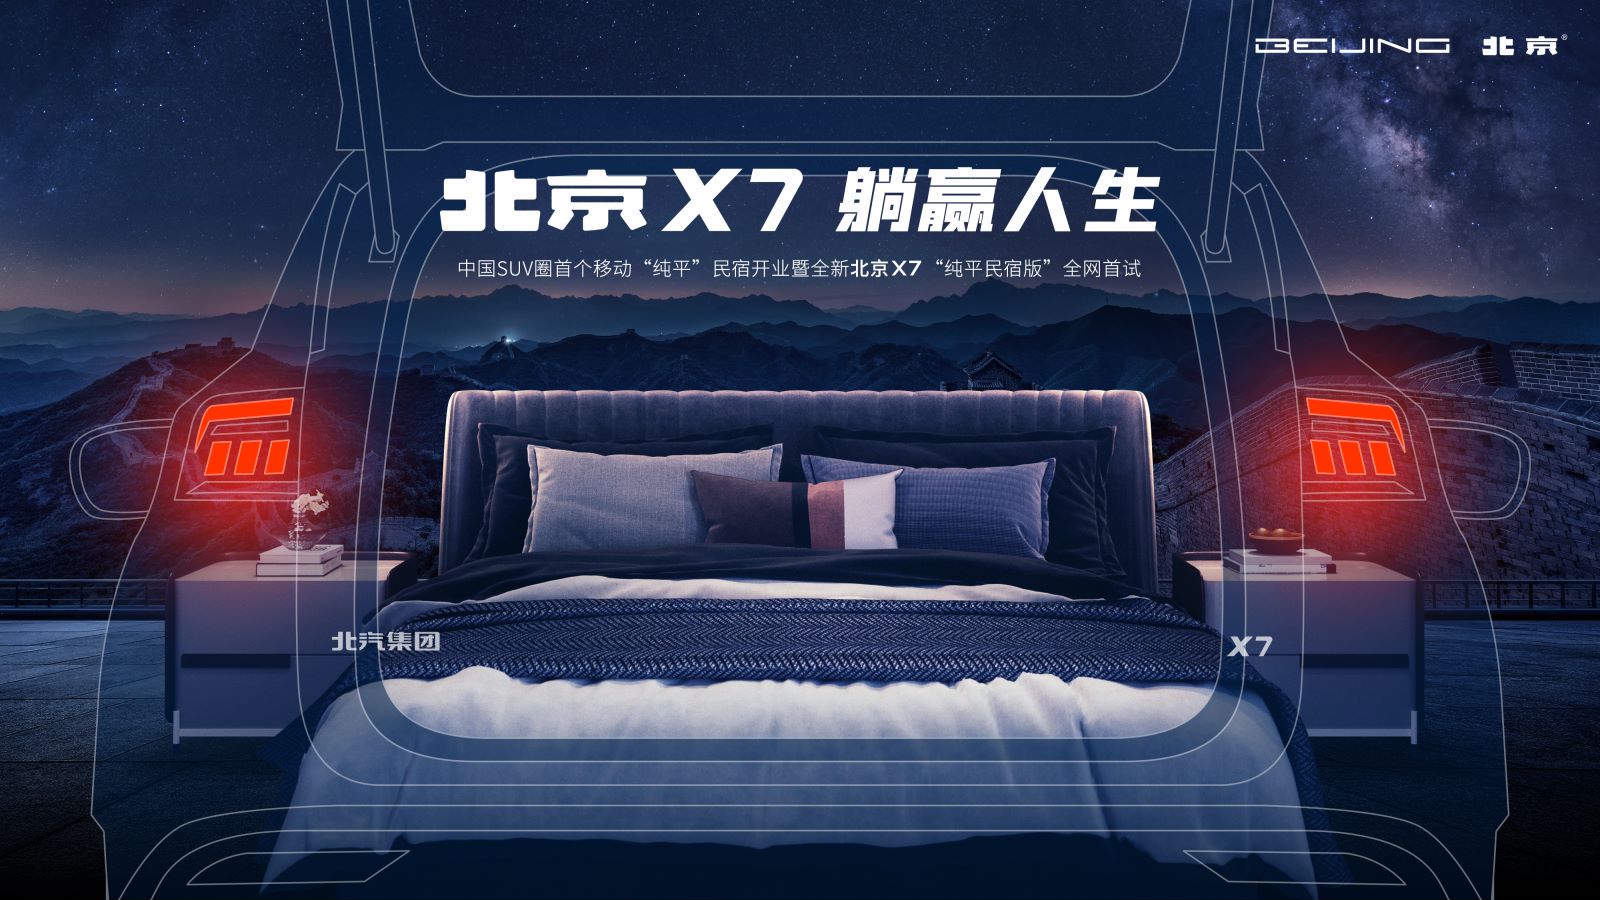 直播丨纯平民宿开业 北京X7解锁出游新姿势